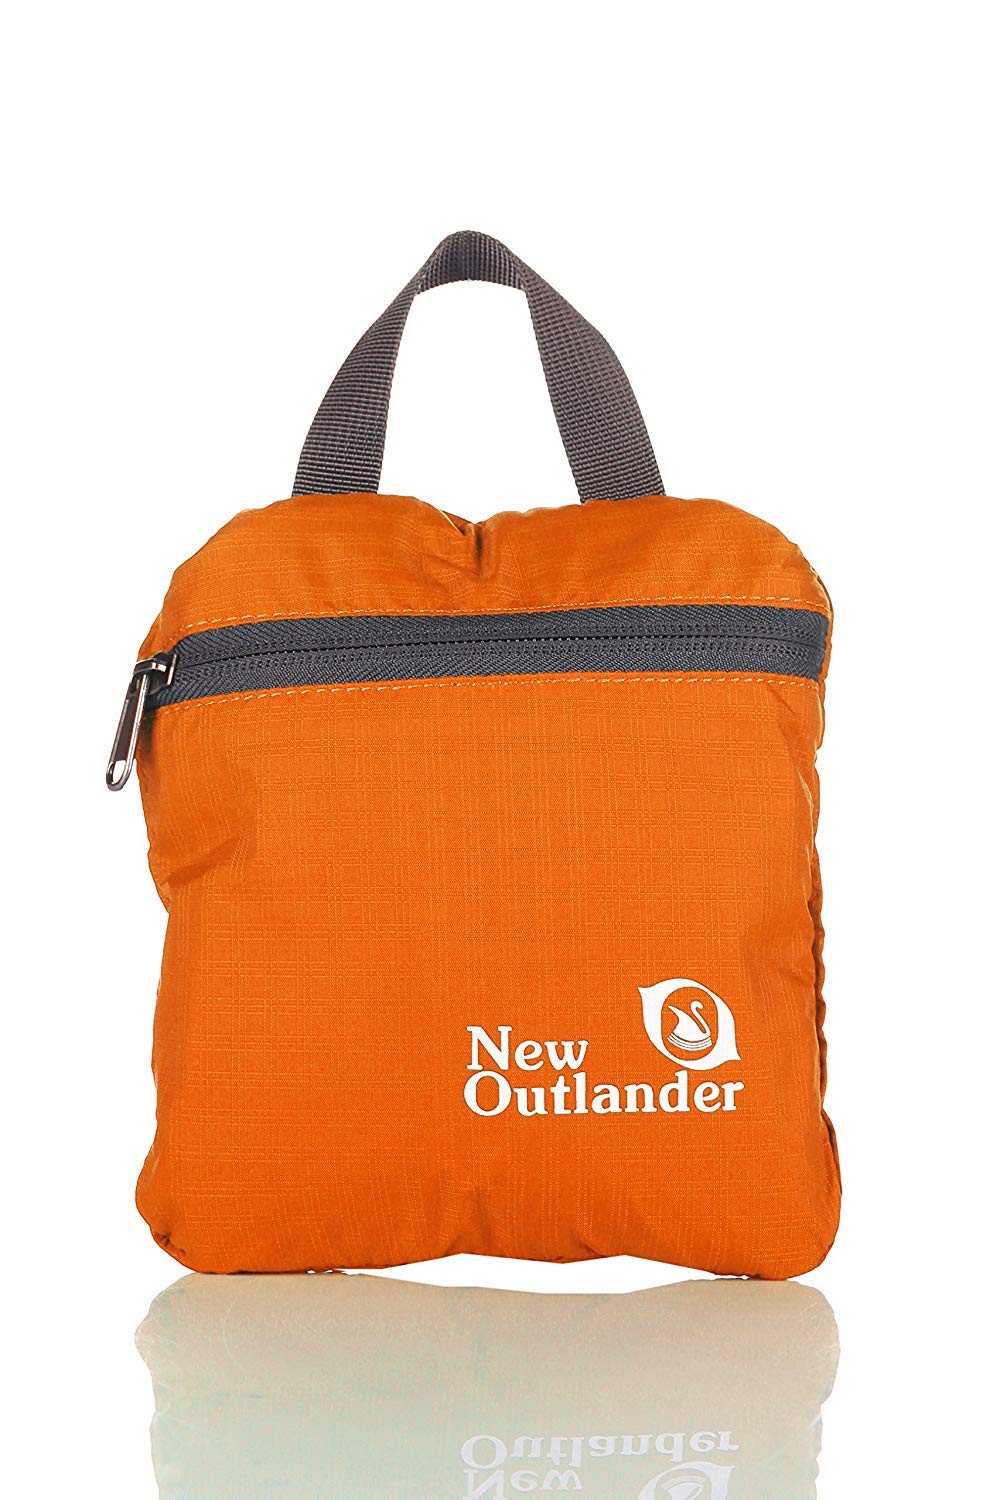 Outlander Packable Handy Lightweight Travel Hiking Backpack Daypack-Orange-L